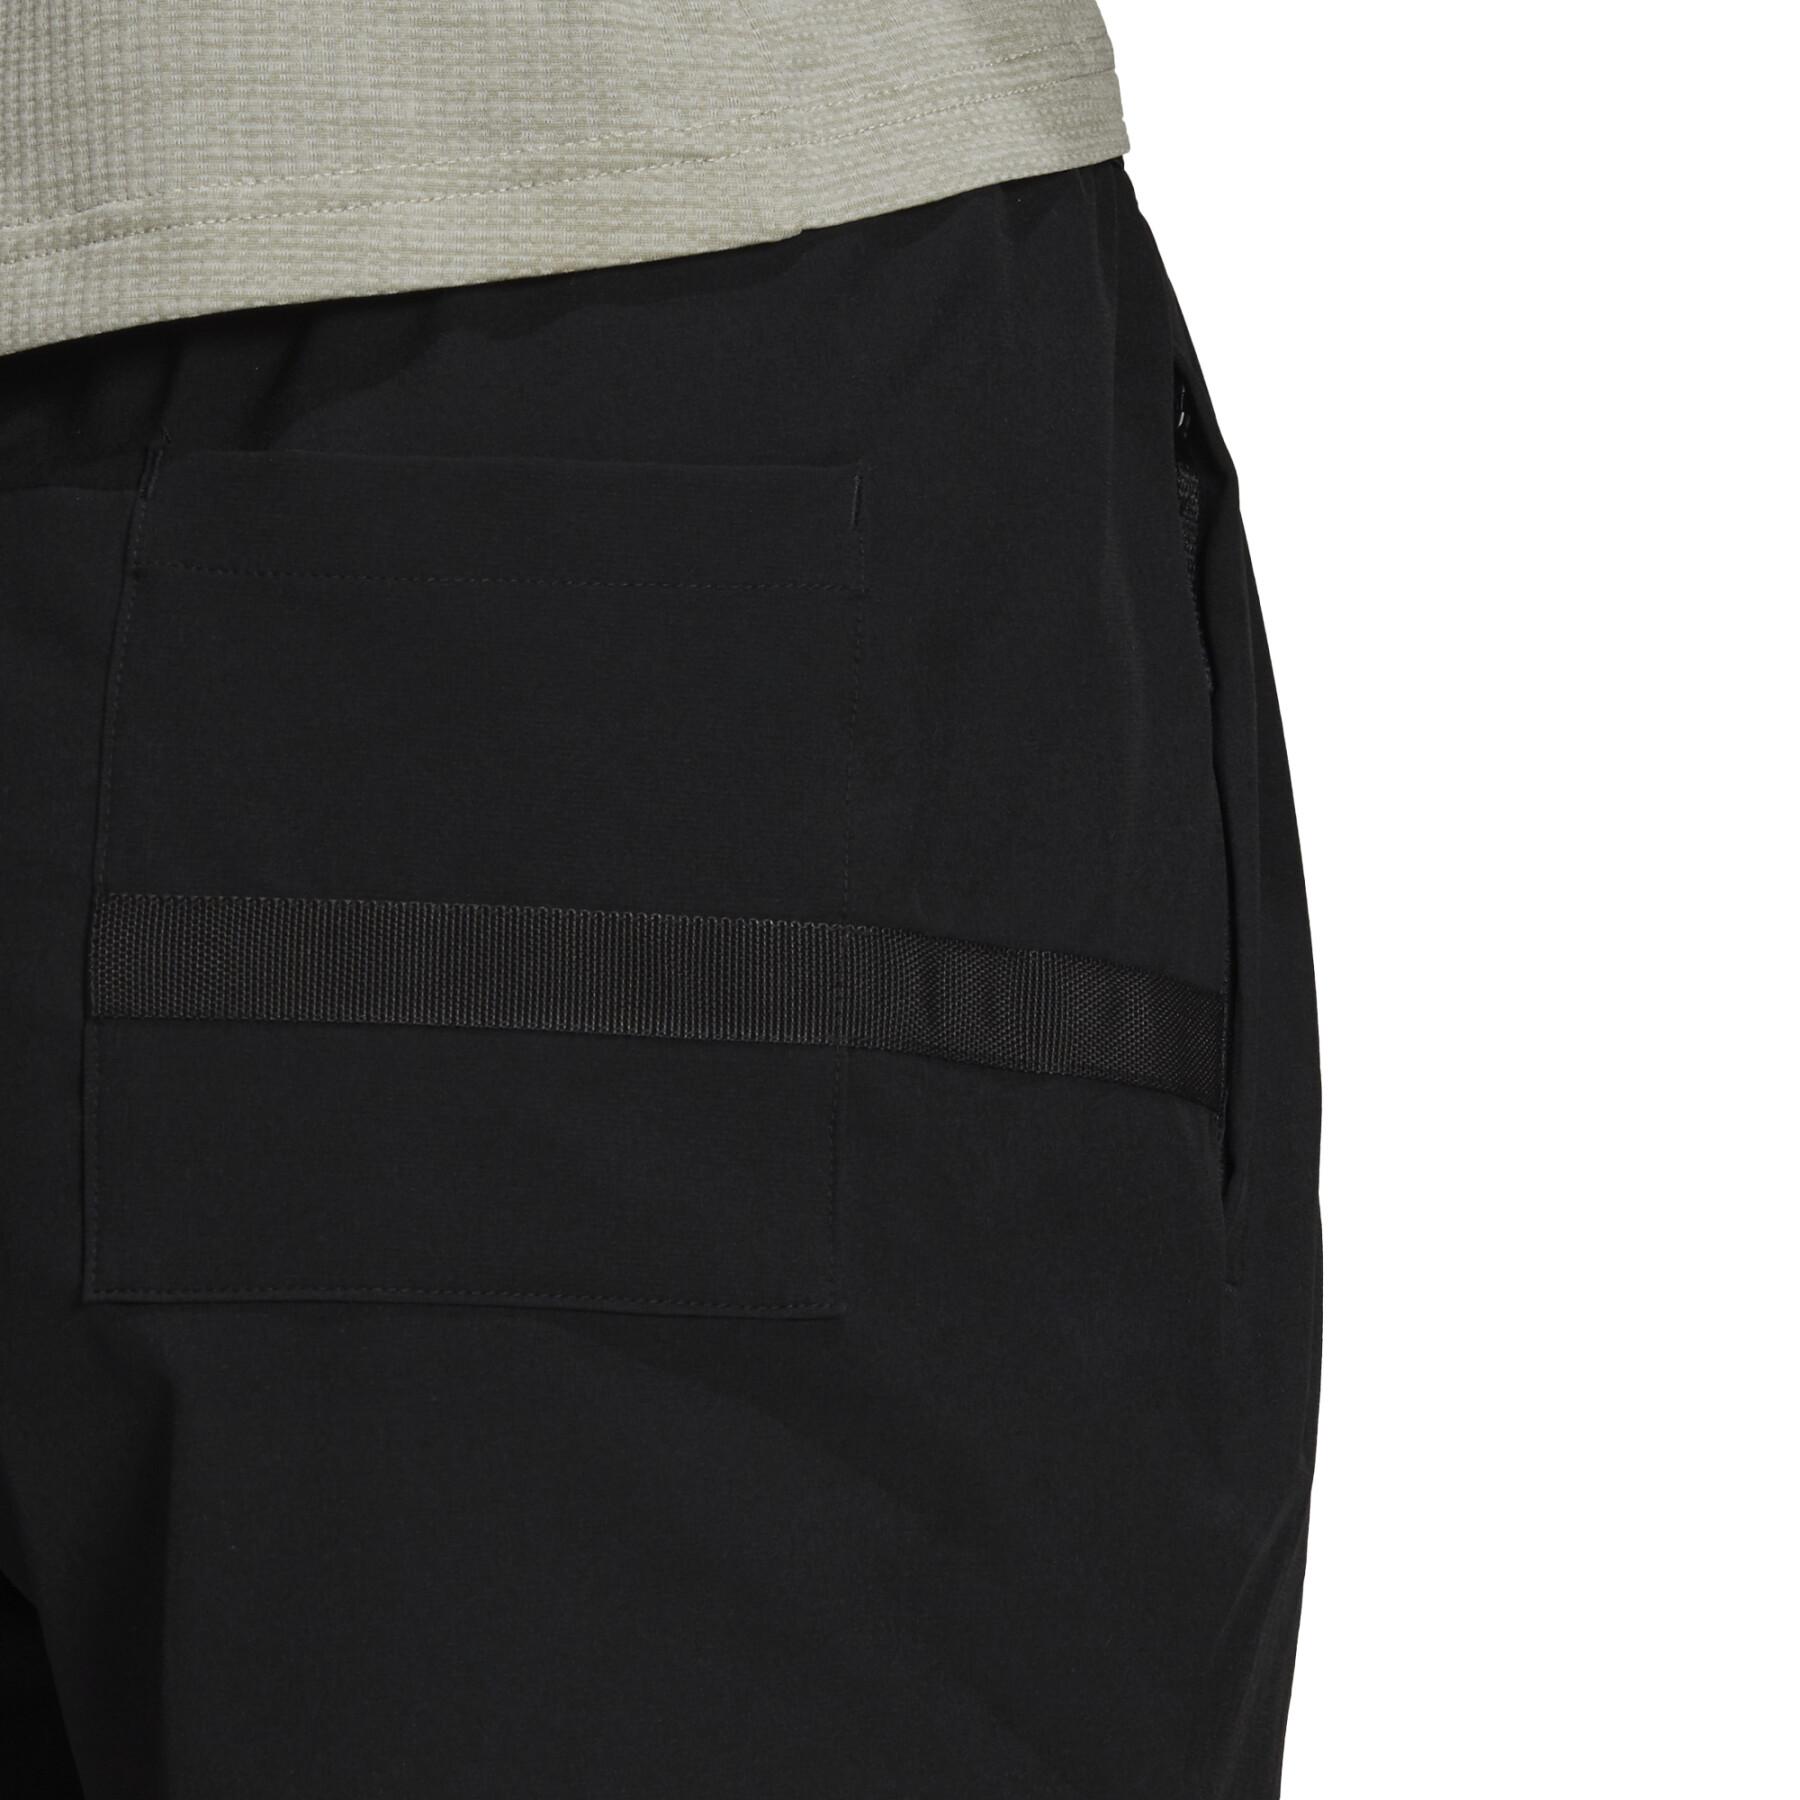 Pantalón corto de mujer adidas Terrex Liteflex